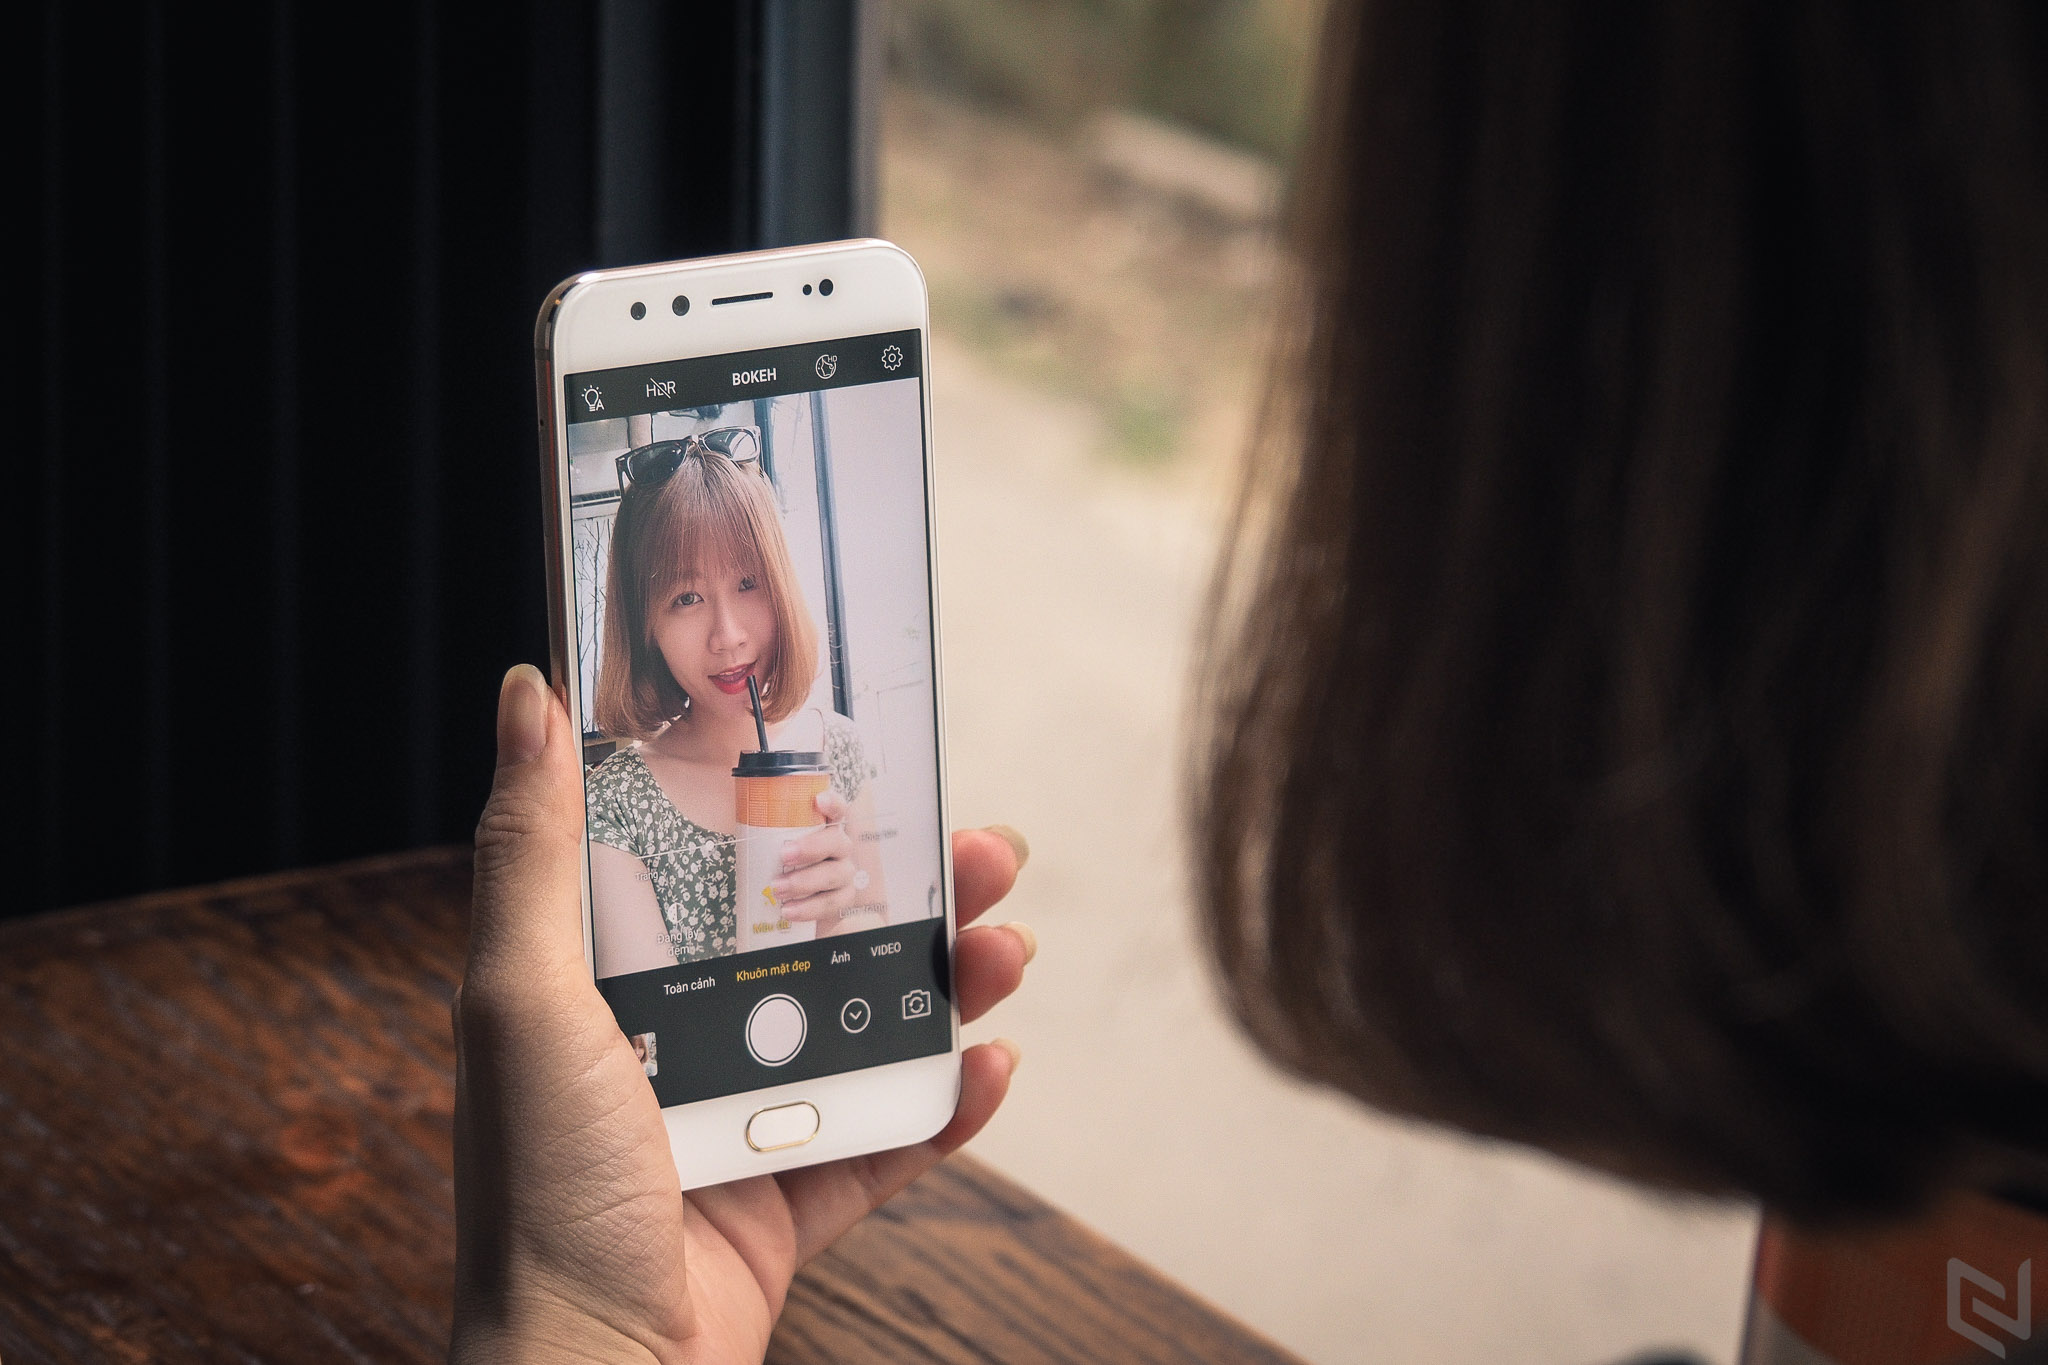 Trải nghiệm Selfie với hai camera trước trên Vivo V5 Plus